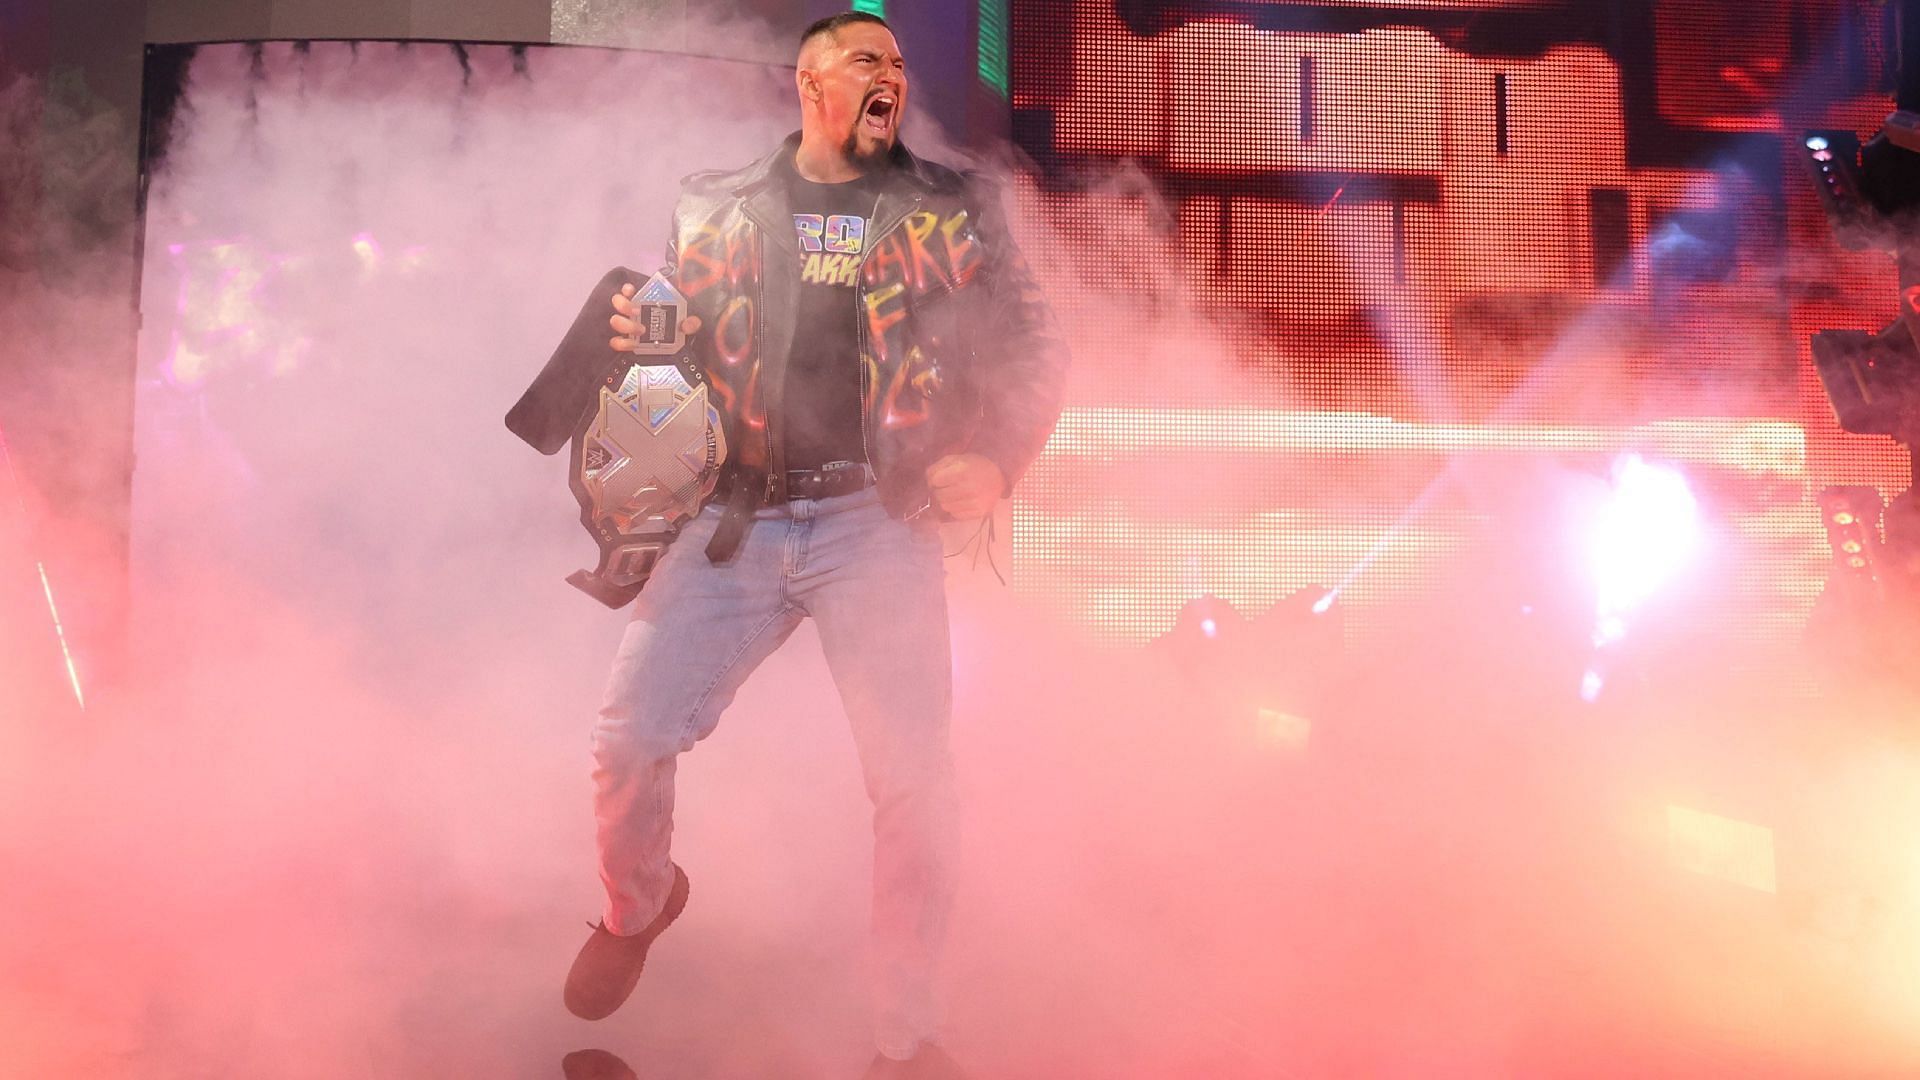 Bron Breakker is the NXT Champion